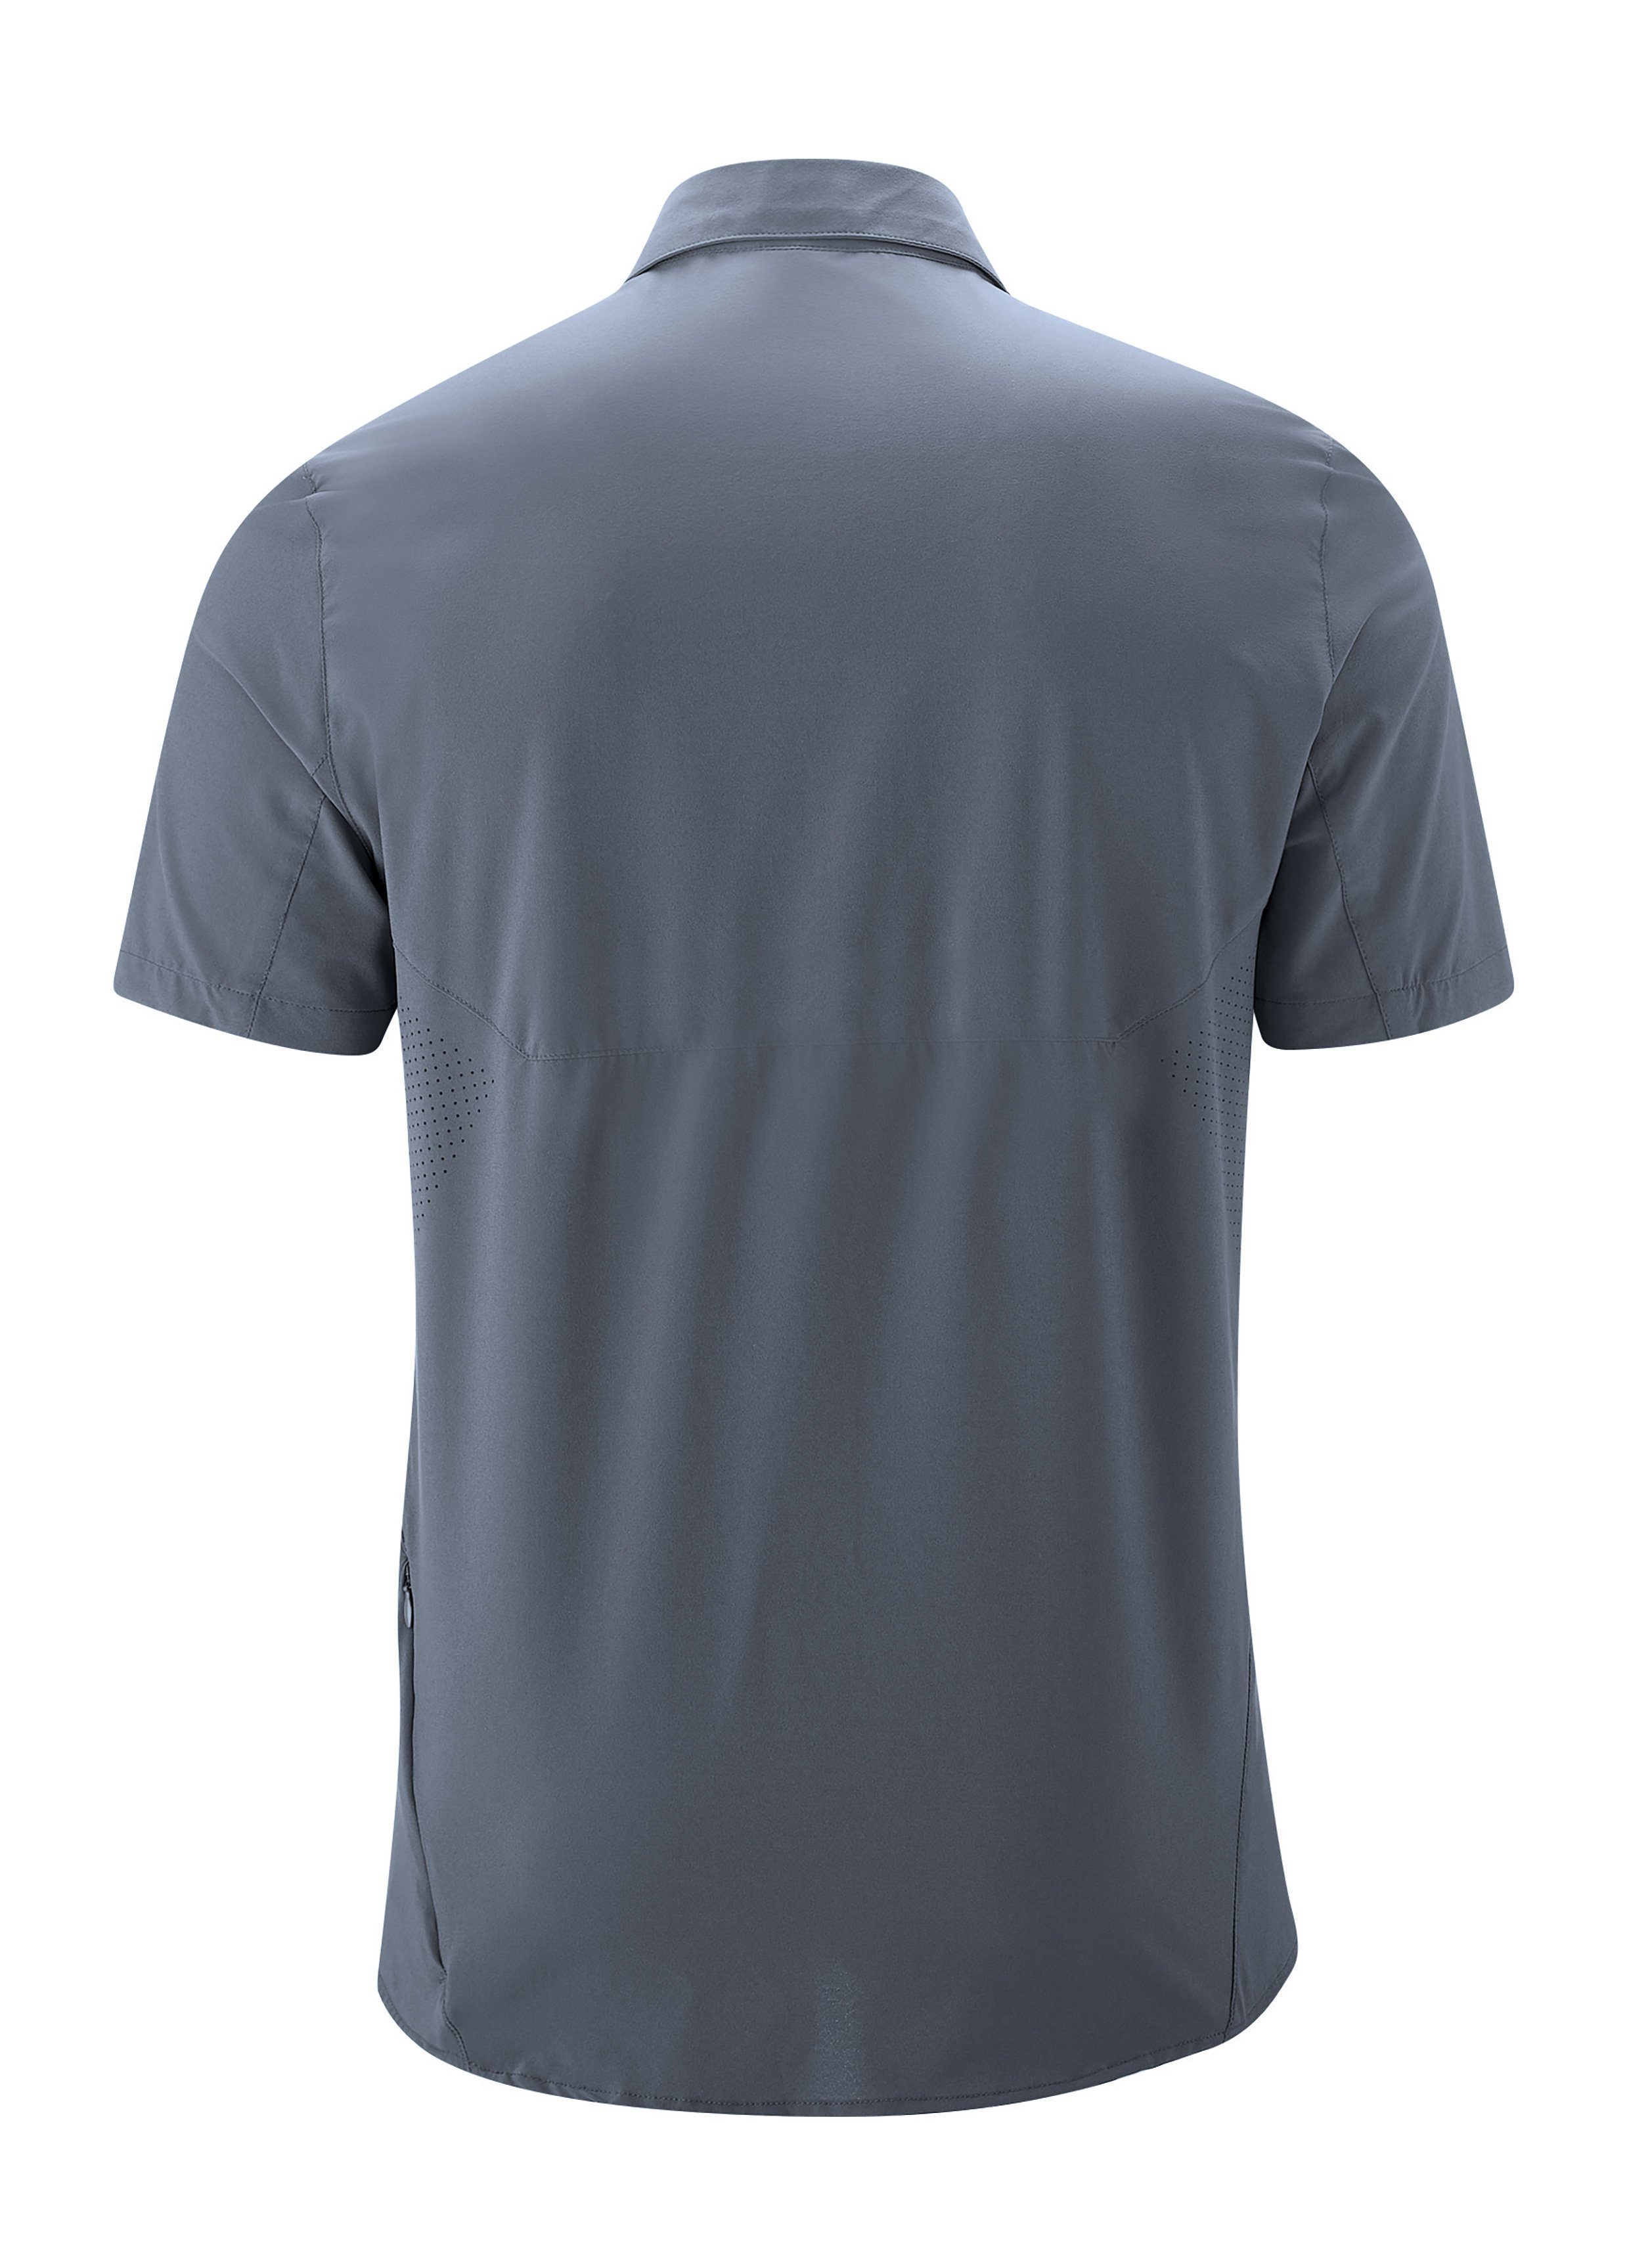 Maier Sports elastisches mit Sinnes Sonnenkragen graublau MS/S Tec Funktionshemd Trekkinghemd Leichtes